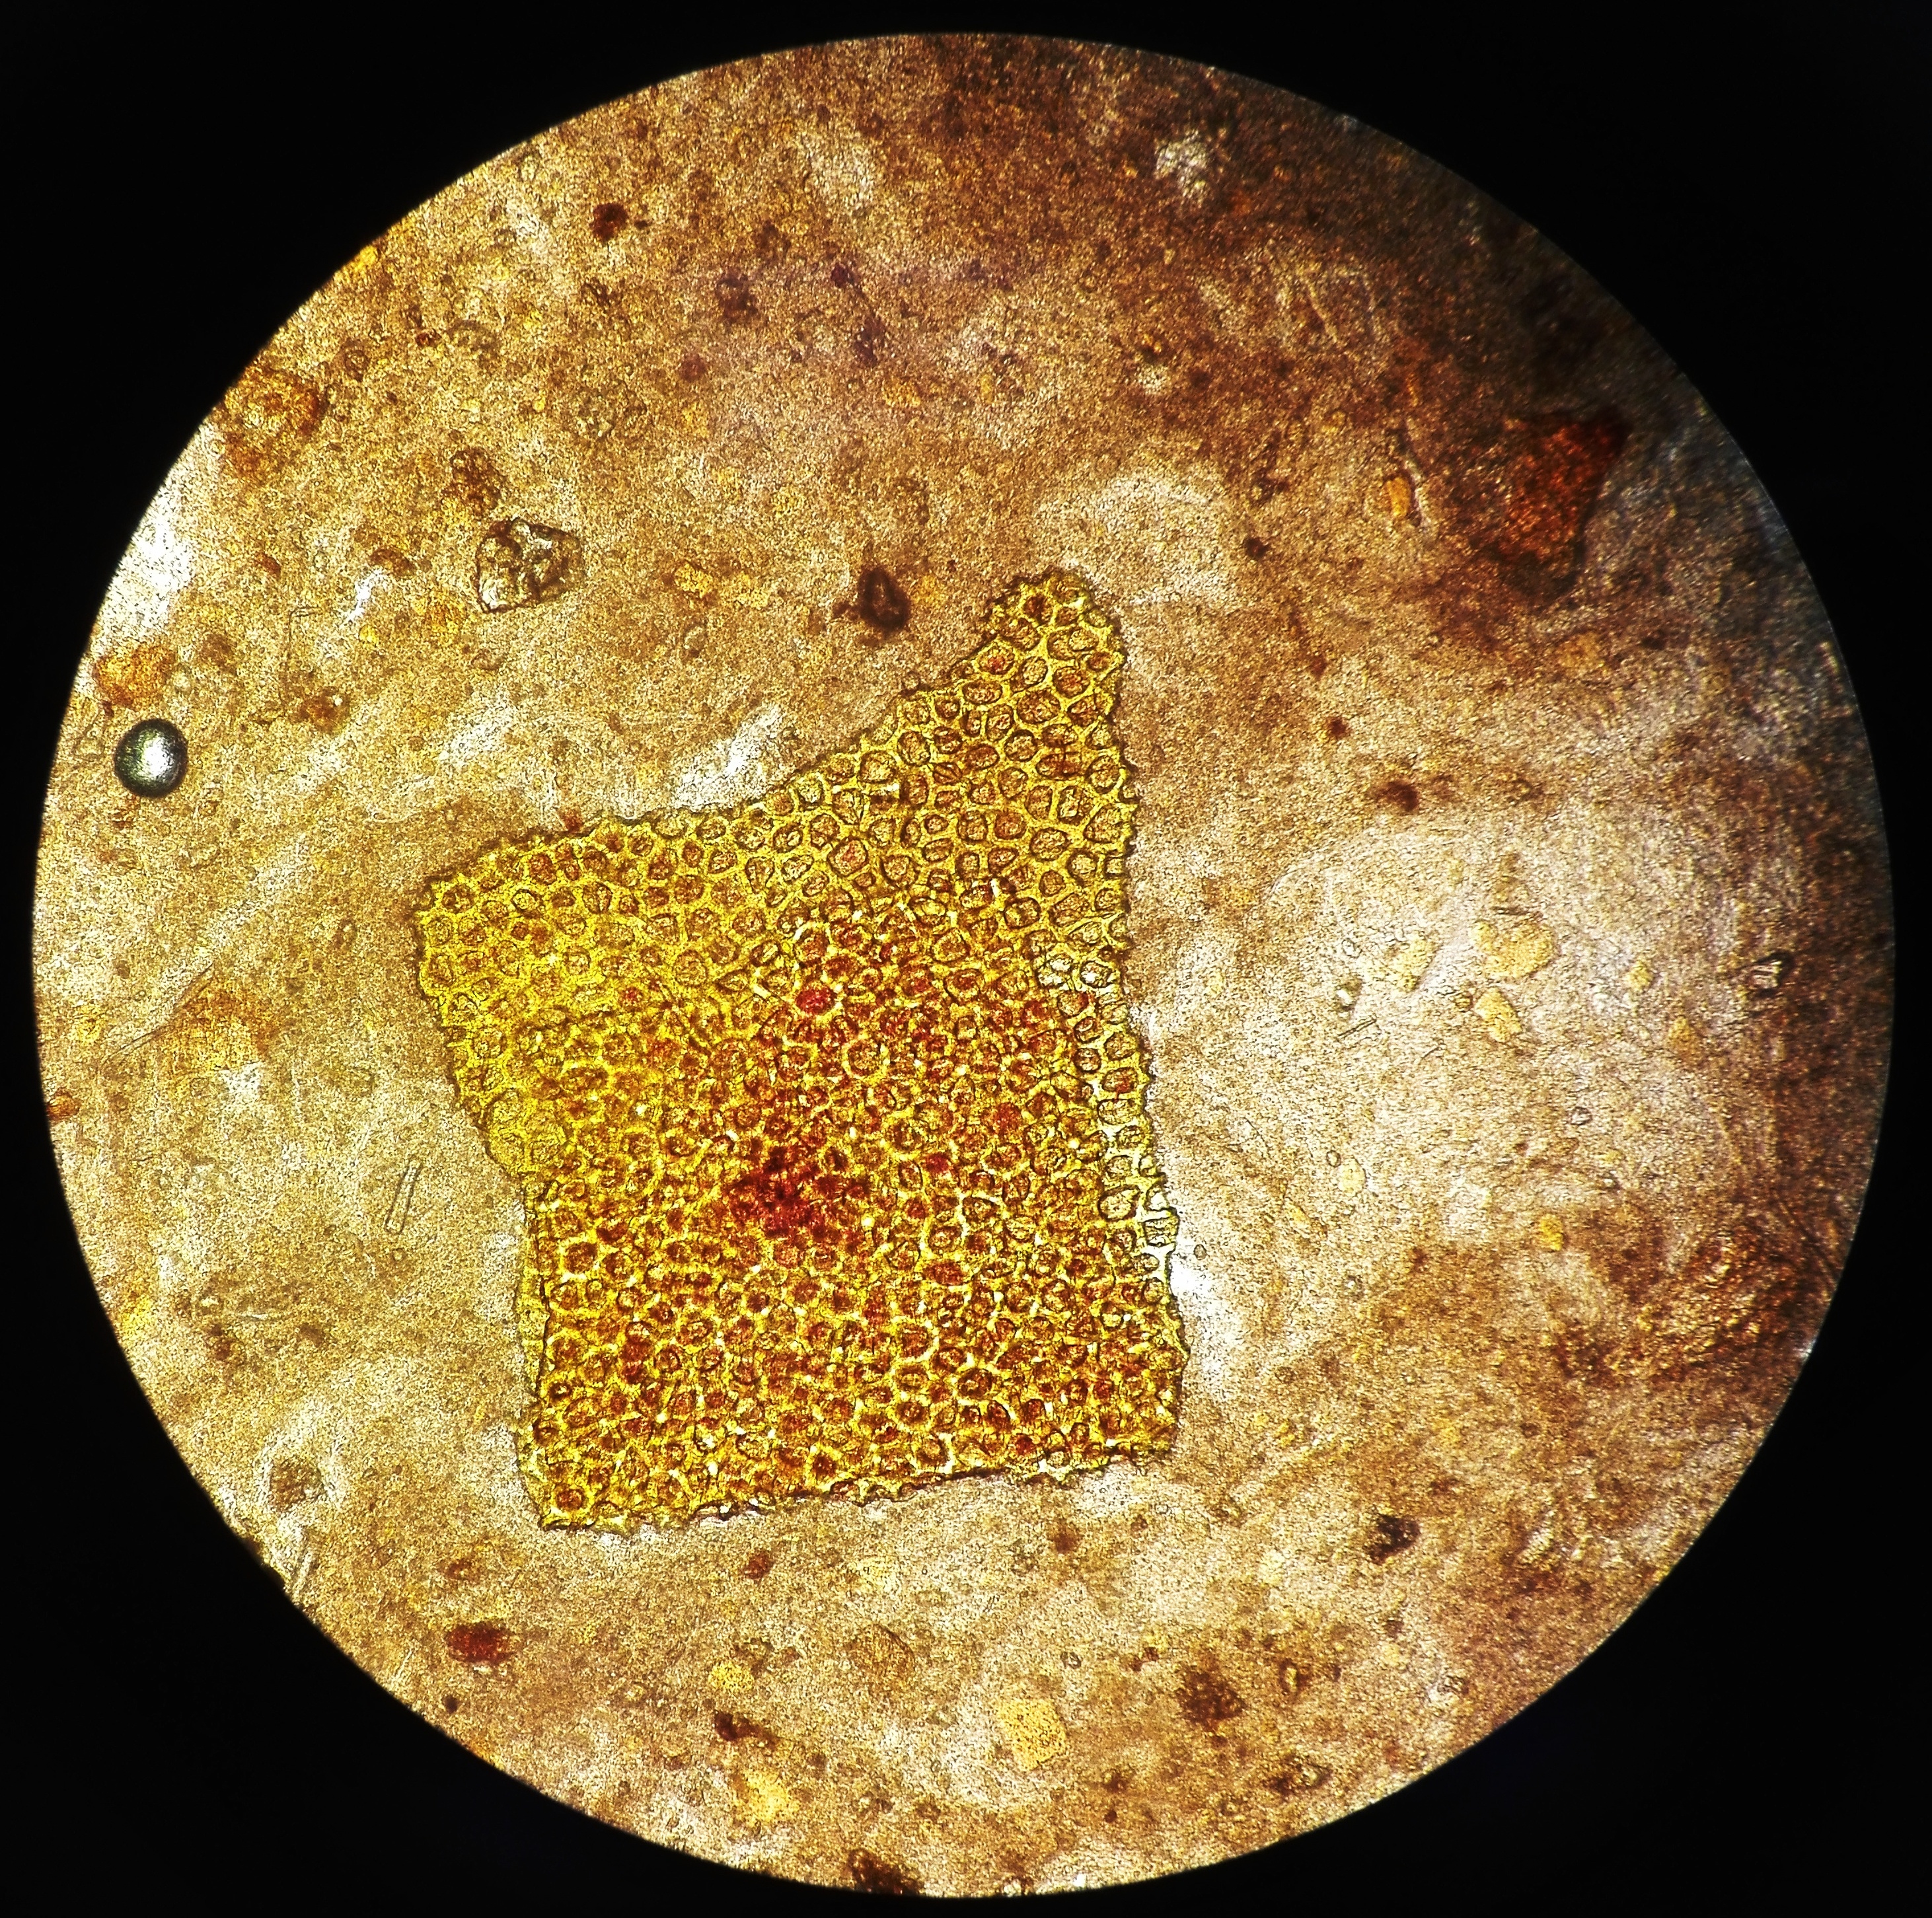 Растительная неперевариваемая клетчатка в кале у взрослого. Микроскопия кала клетчатка. Микроскопия кала переваримая клетчатка. Микроскопия кала растительная клетчатка. Переваренная клетчатка микроскопия.